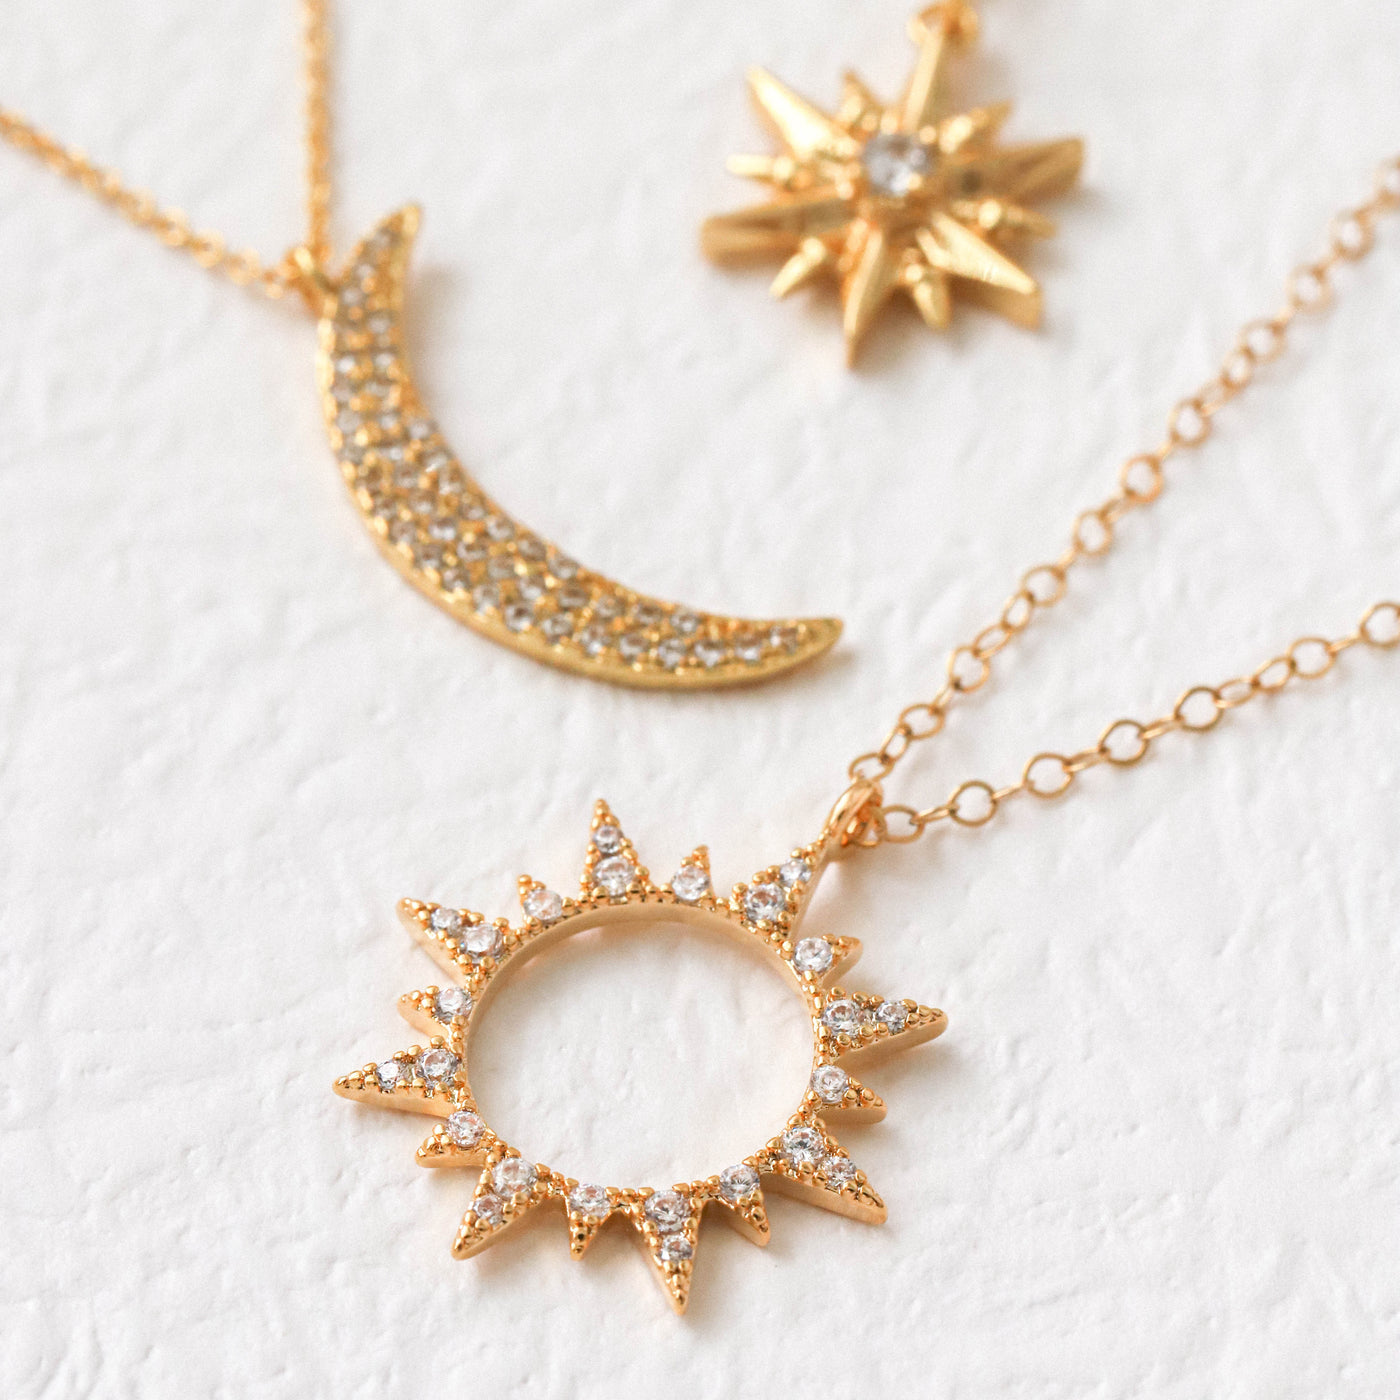 Gold sun pendant necklaces